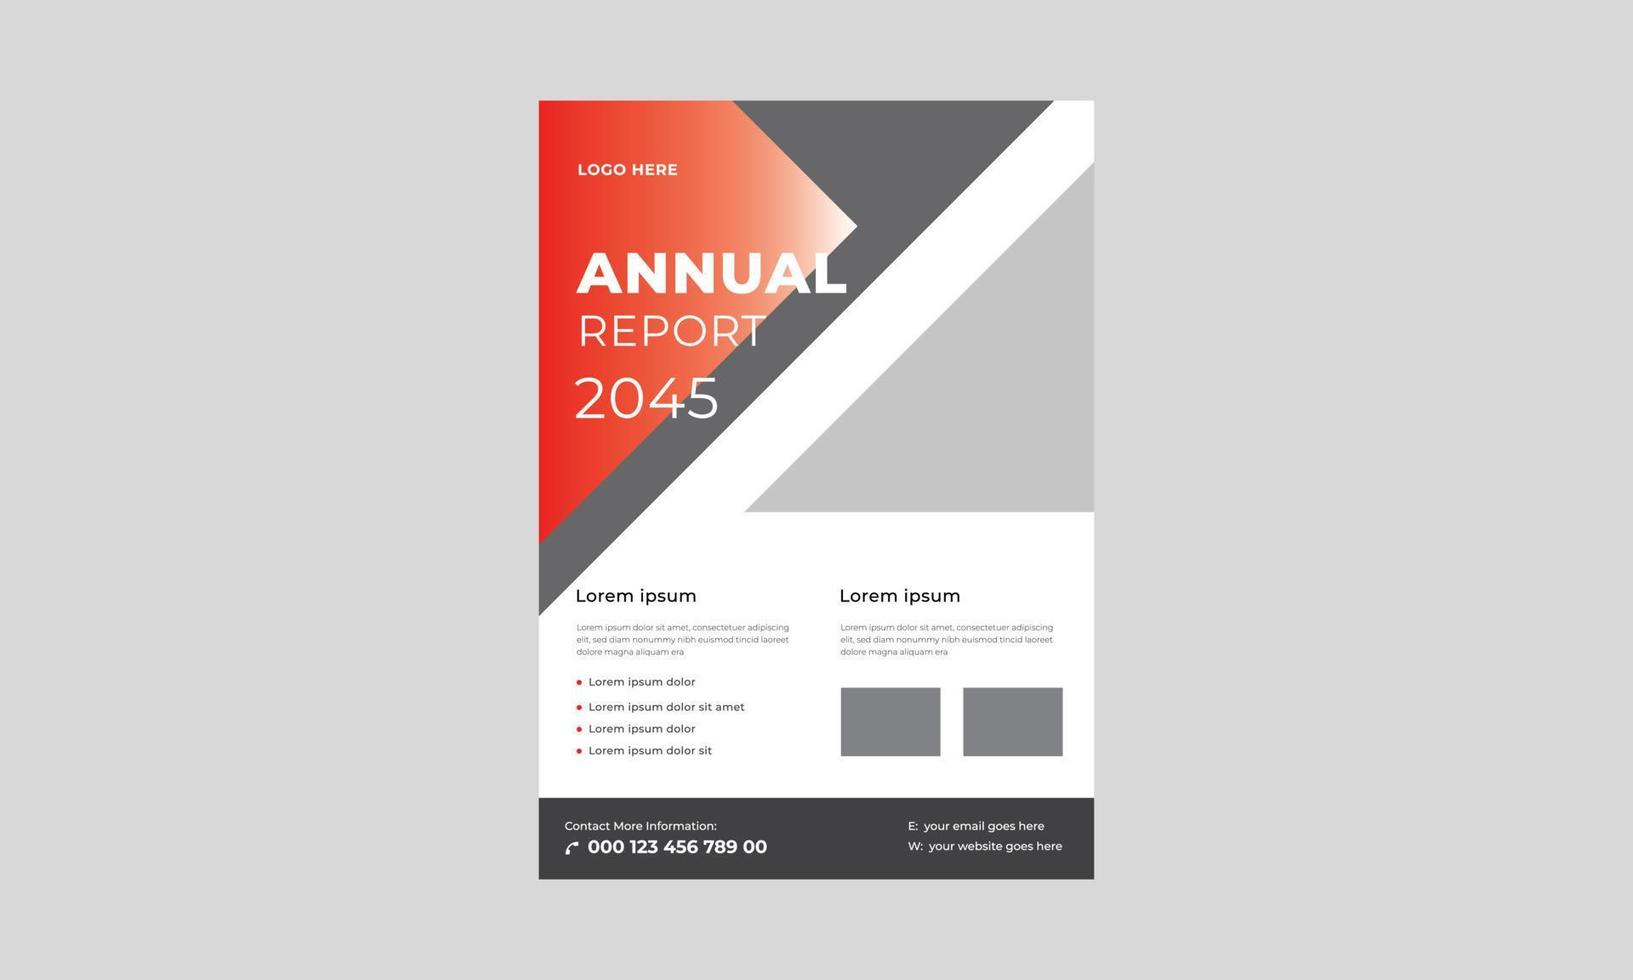 Modern Annual Report Brochure Template, Geometric Corporate Book Cover Design Template in A4, Annual Report Business Brochure Templates. vector